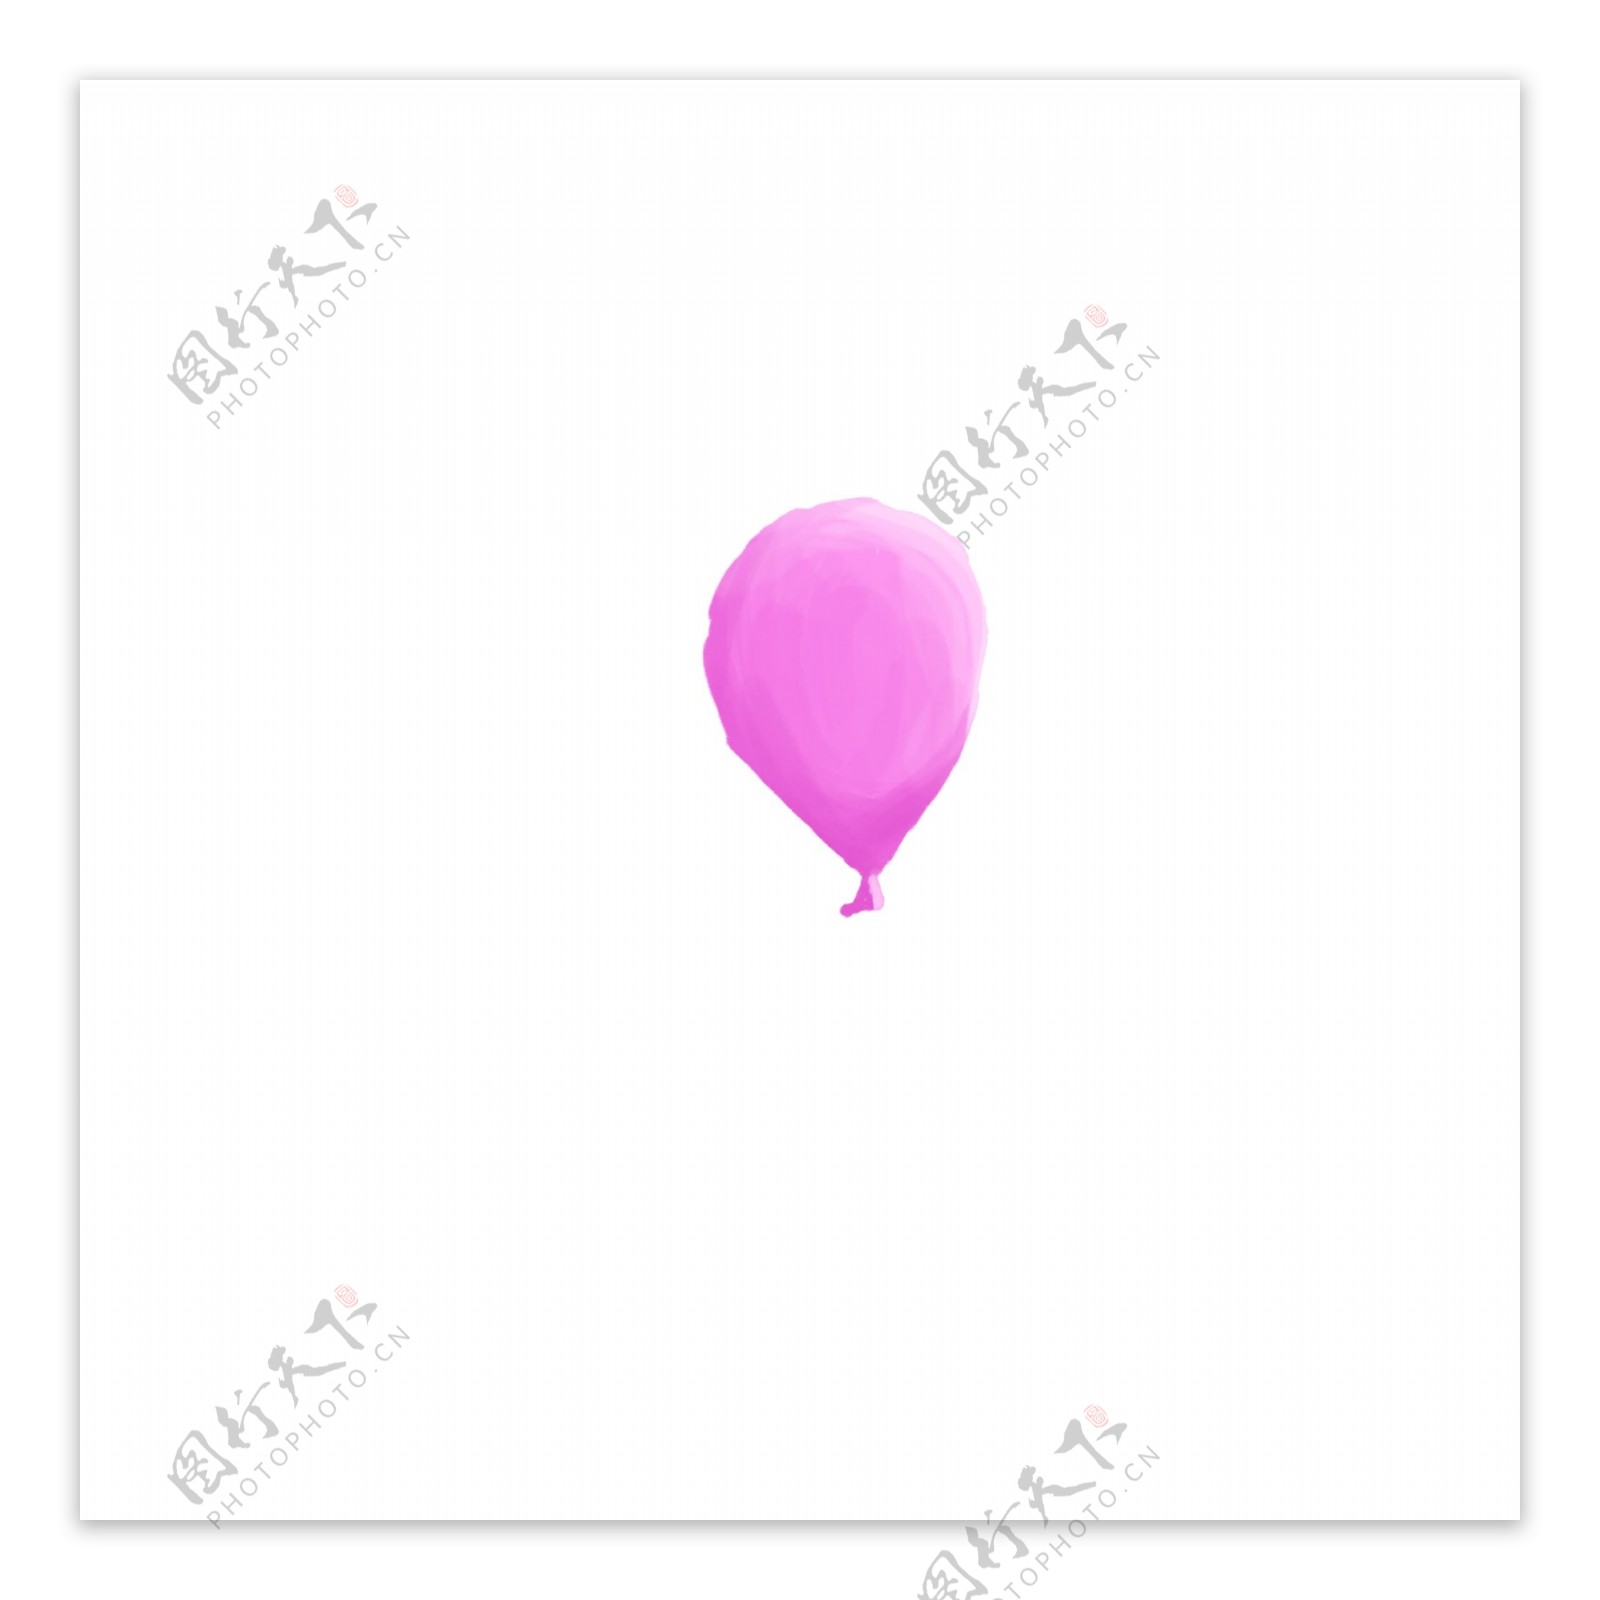 原创粉色气球元素设计